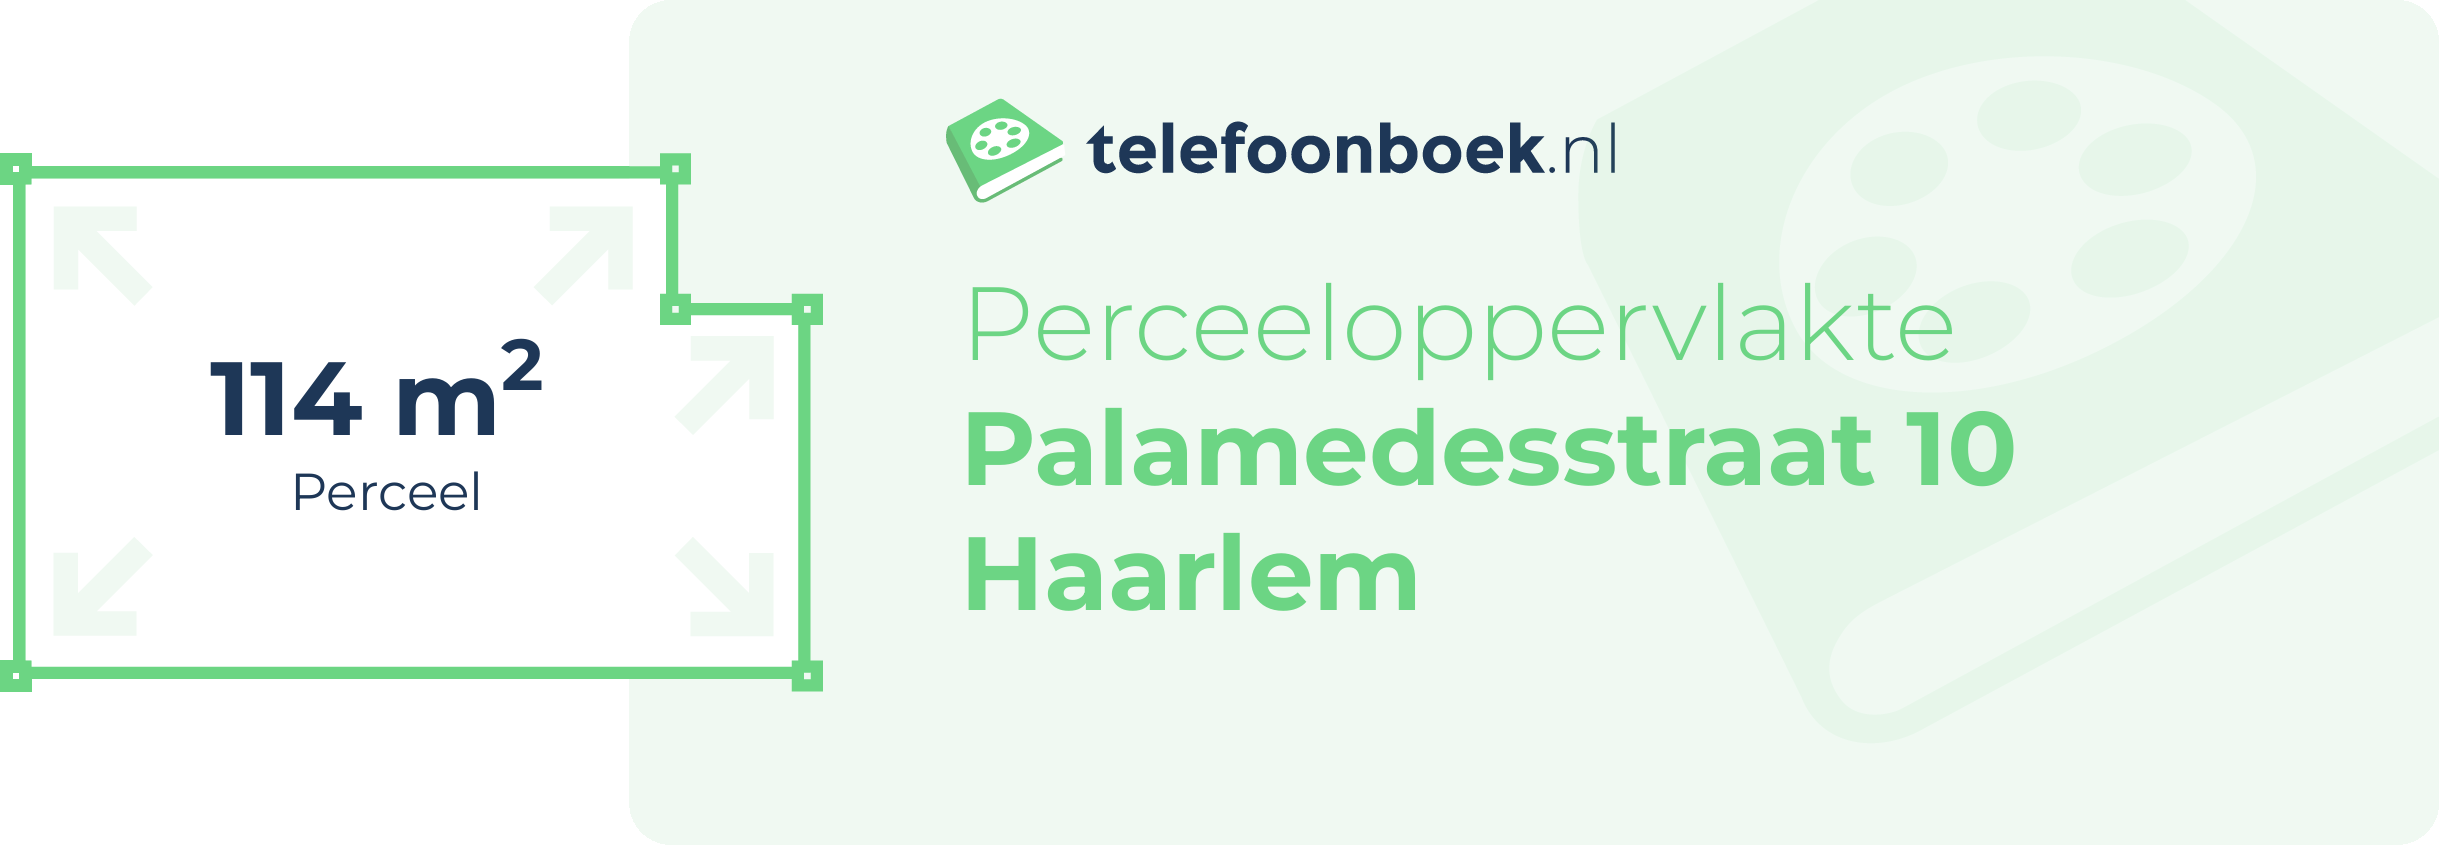 Perceeloppervlakte Palamedesstraat 10 Haarlem